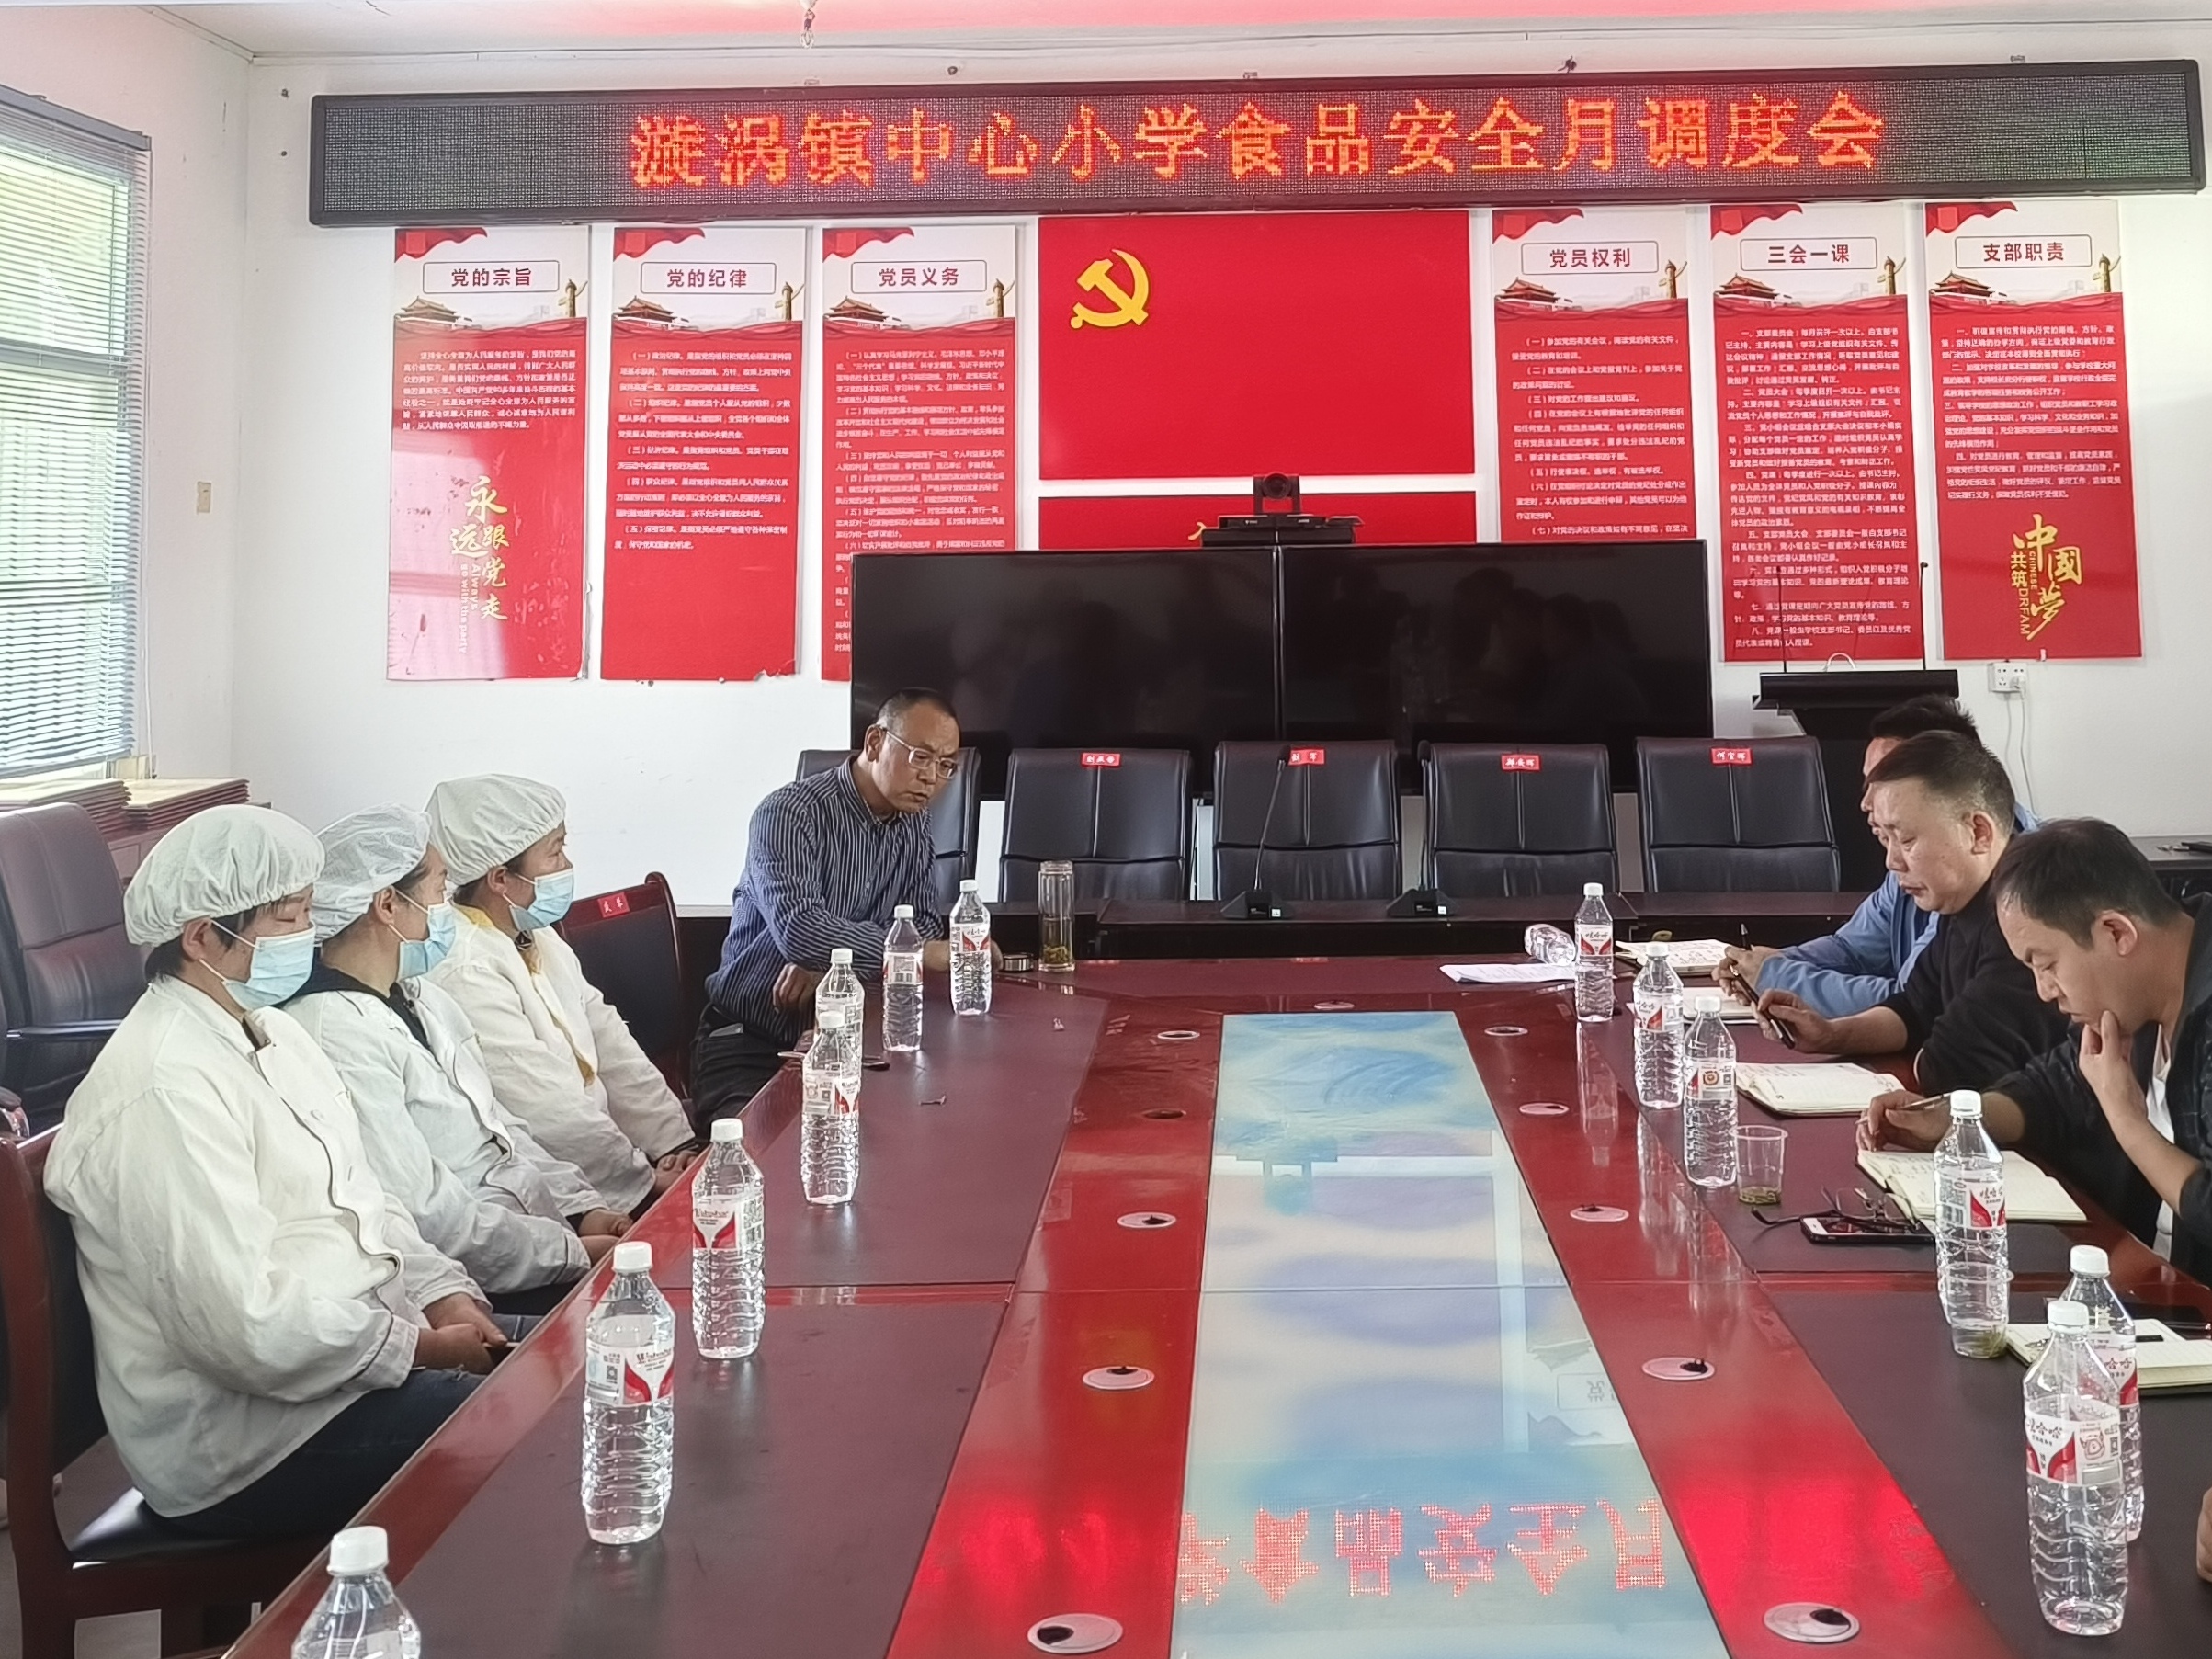 汉阴县漩涡镇小学教育集团召开食品安全培训暨月调度工作会